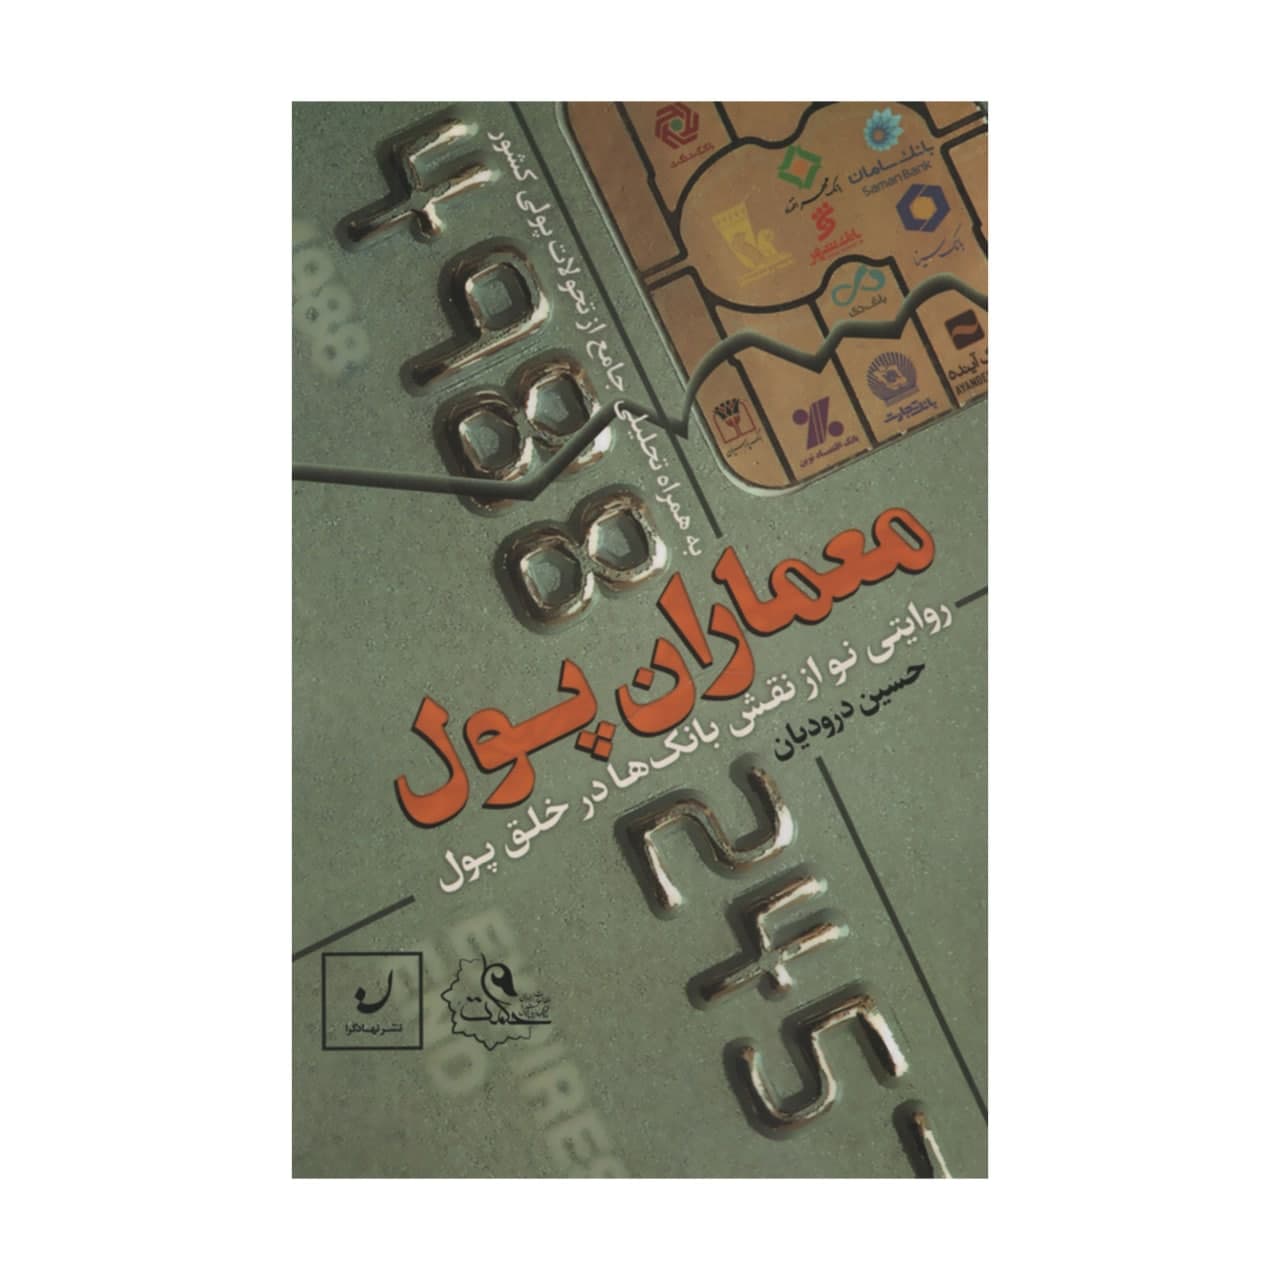 کتاب معماران پول اثر حسین درودیان نشر نهادگرا